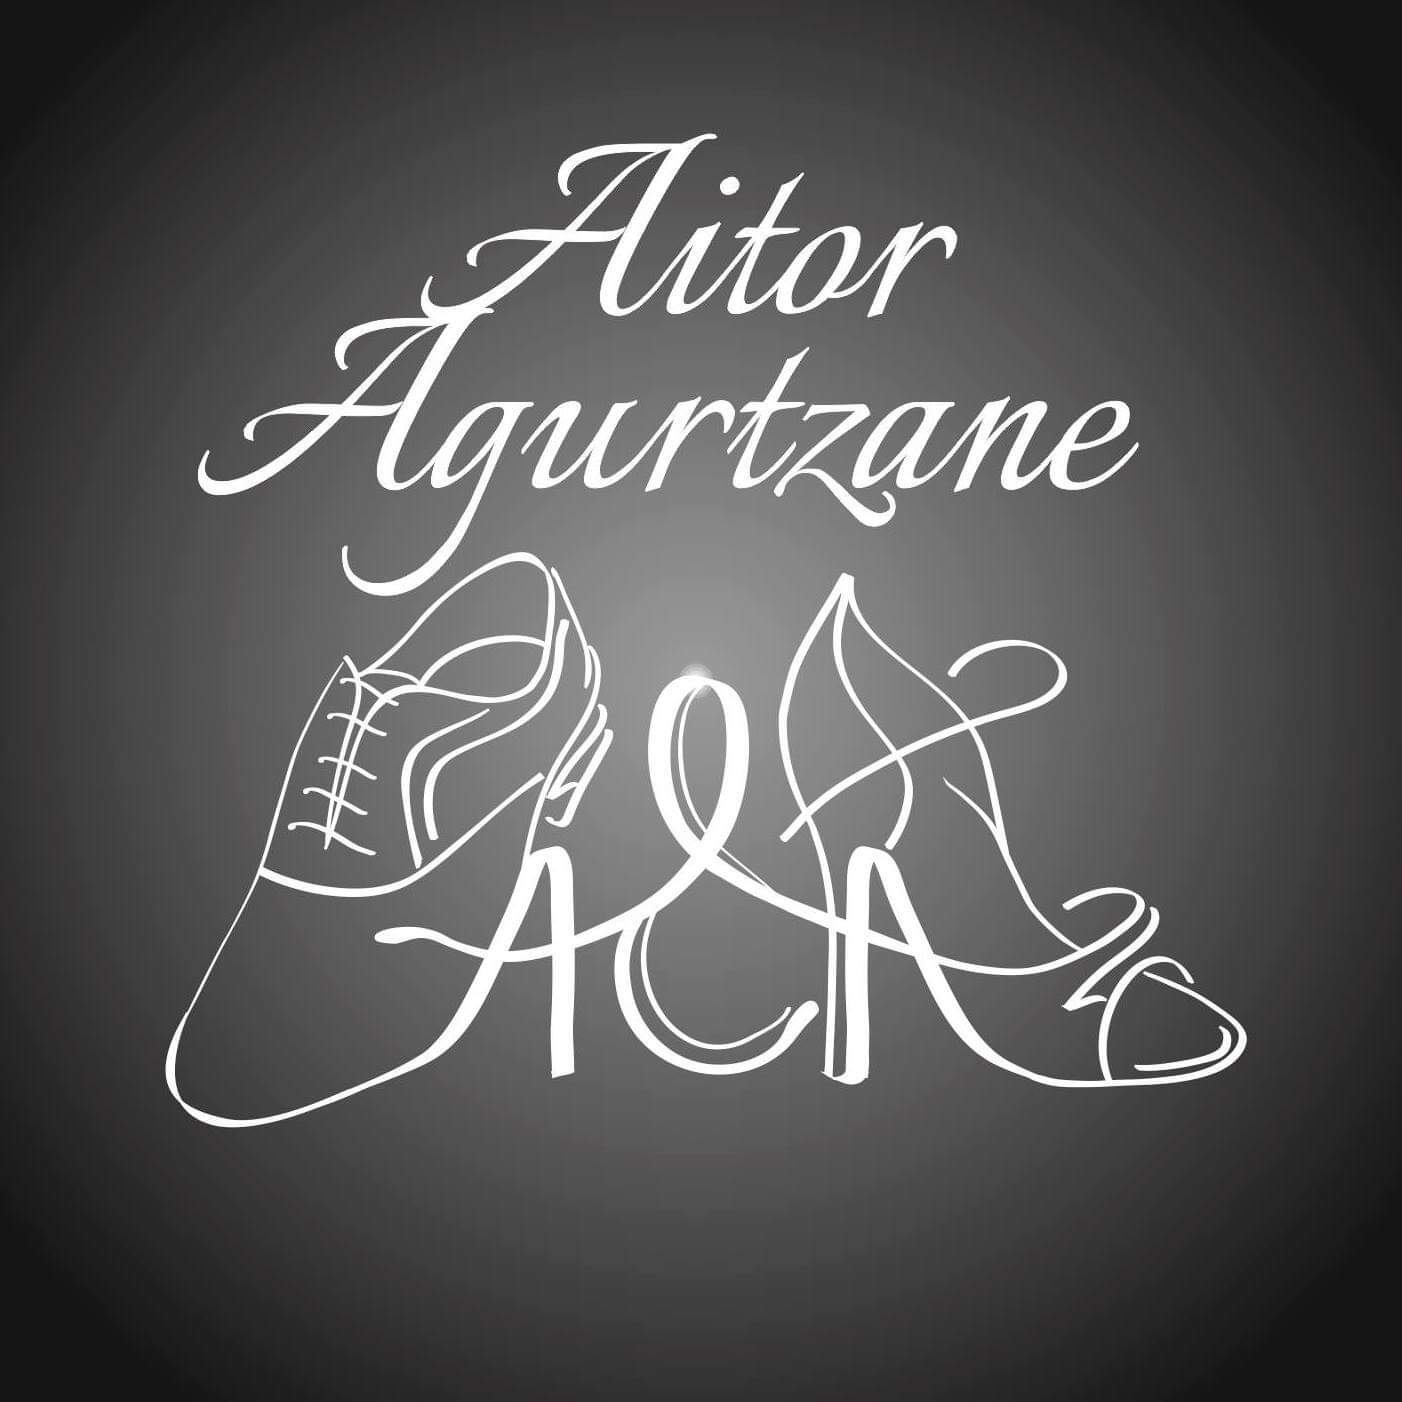 Aitor & Agurtzane